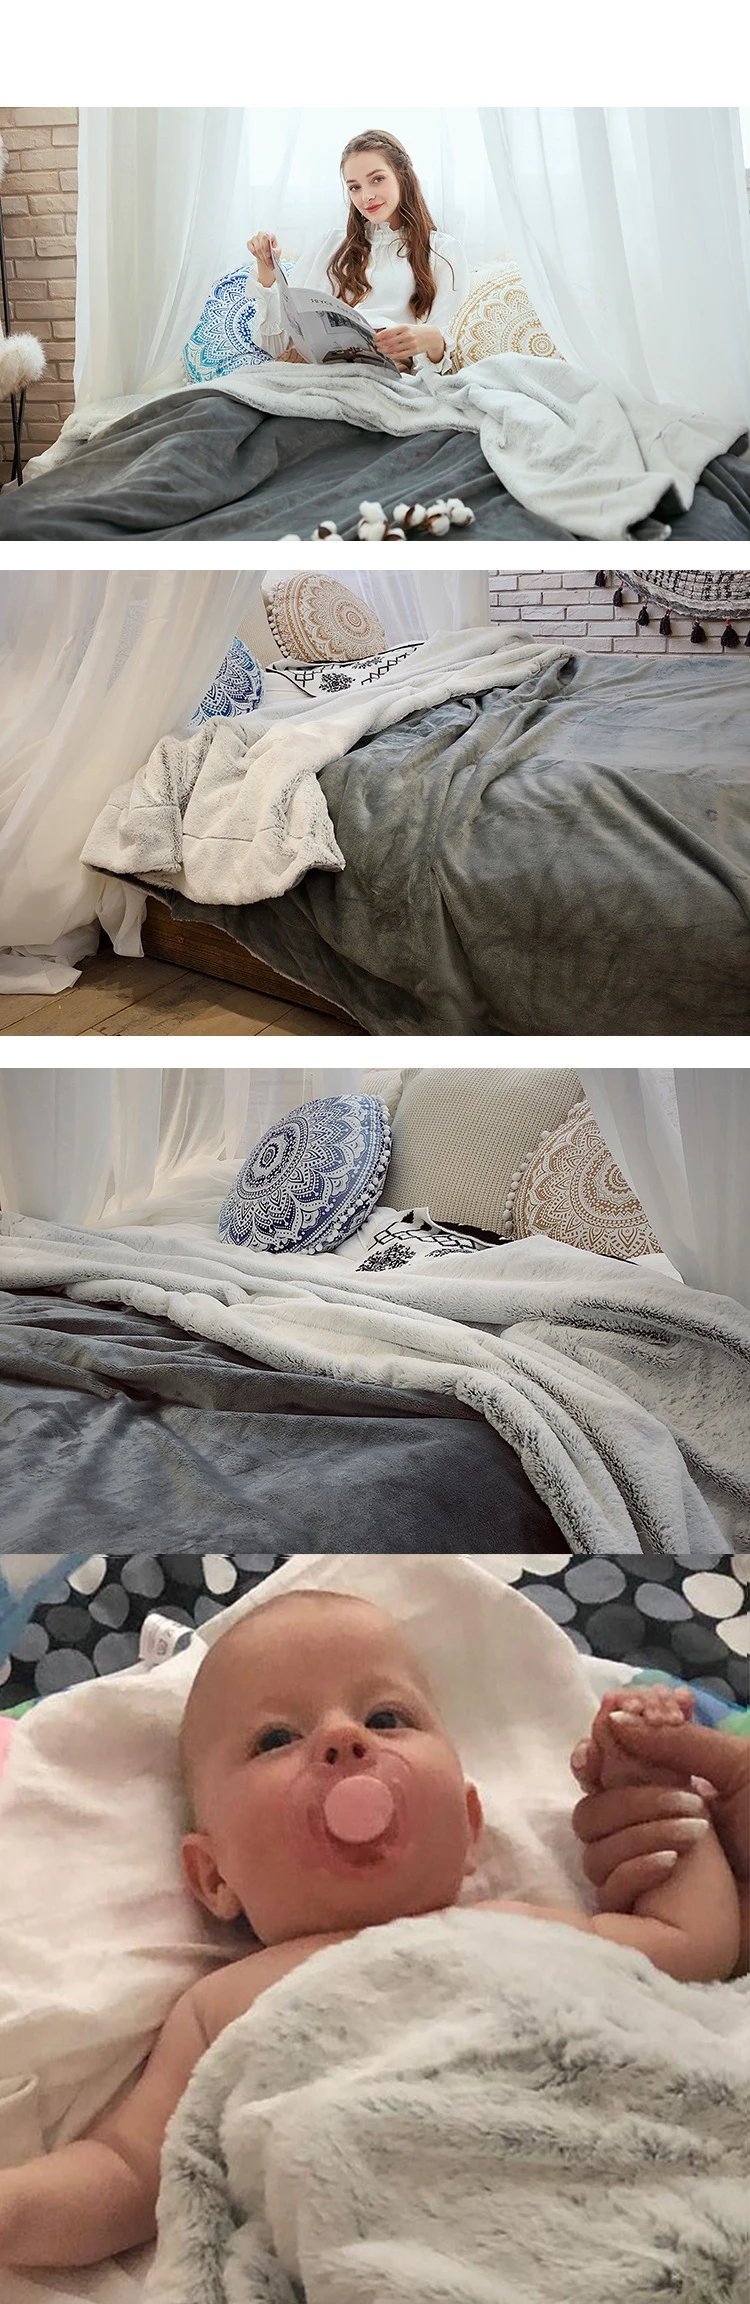 Мягкие пушистые теплые плюшевые одеяла из искусственного меха, двухслойные норковые пледы, односпальная двуспальная кровать, зимние фланелевые одеяла на кровать